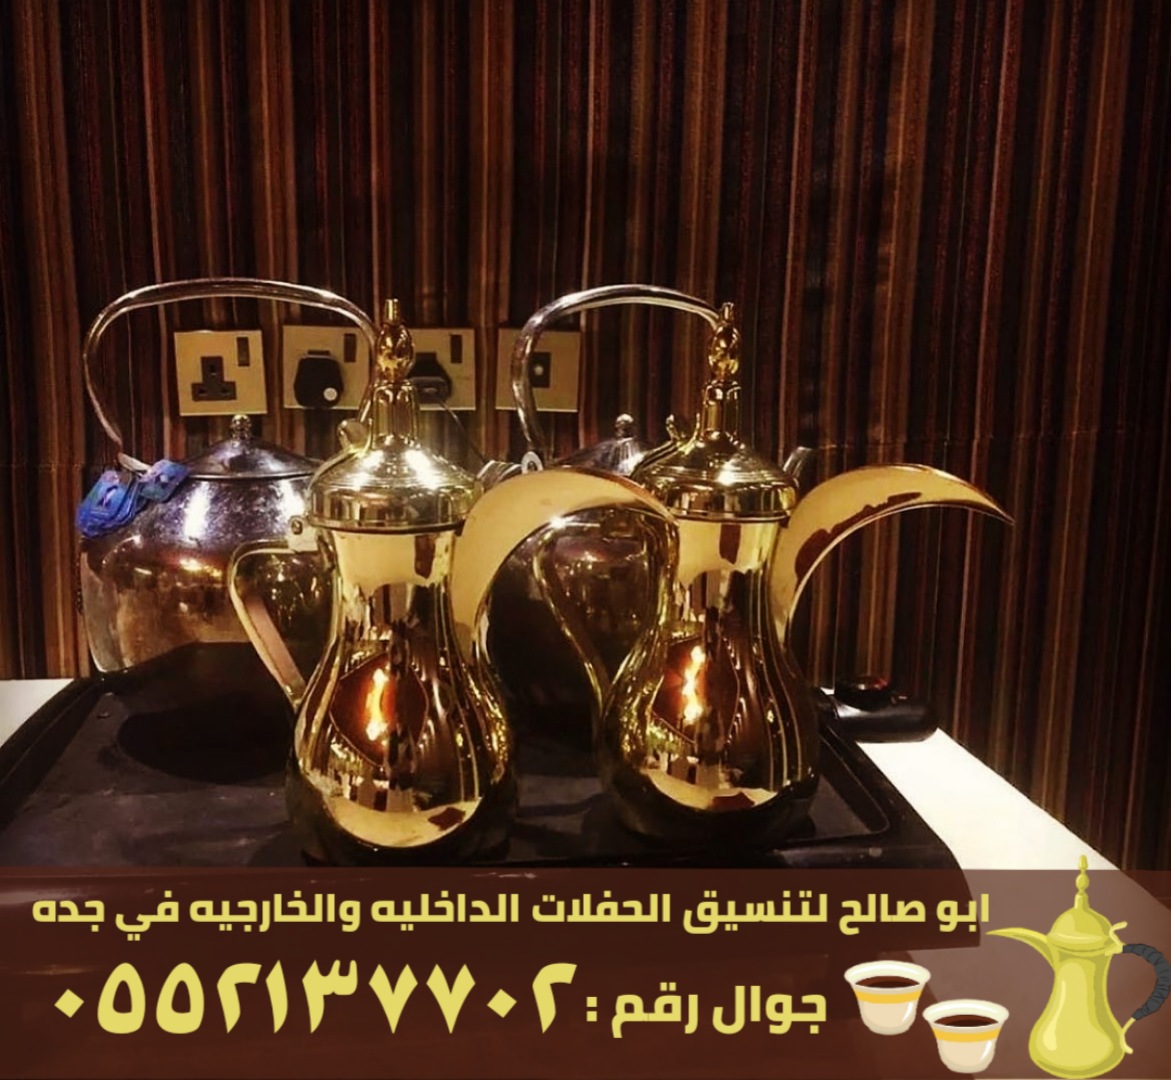 قهوجيات وصبابين قهوة في جدة, 0552137702 P_2560qi3hr4